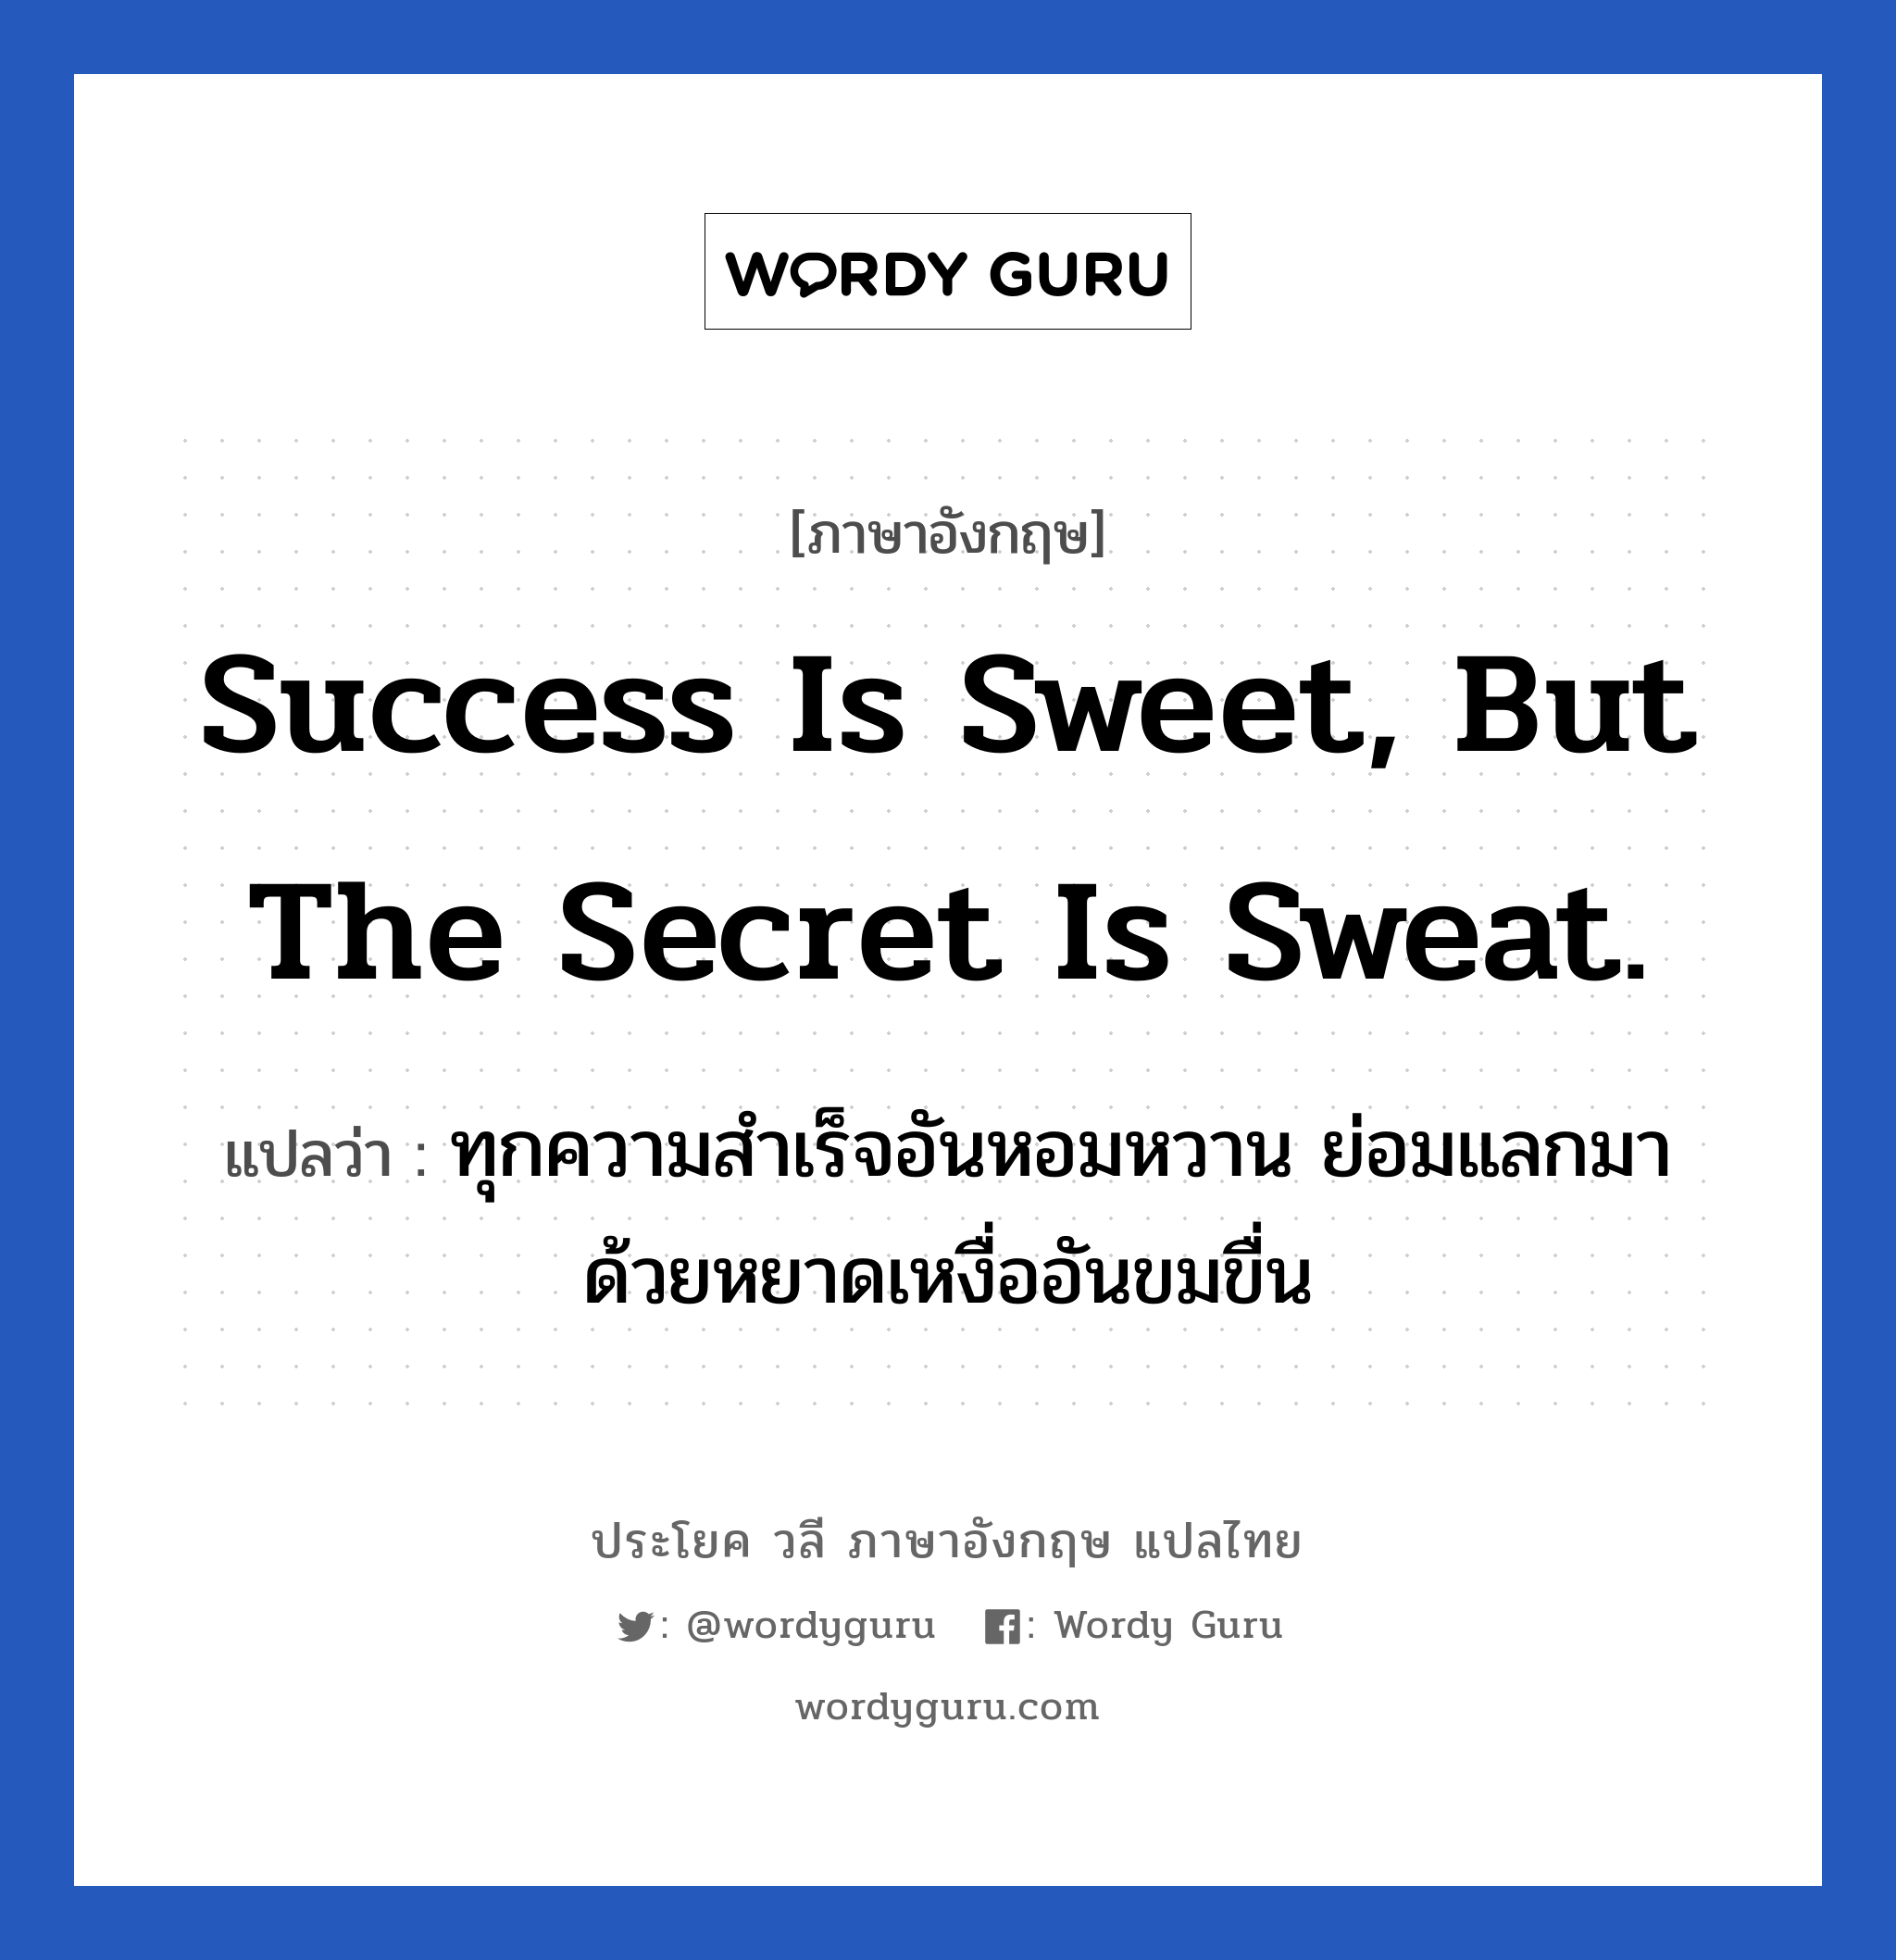 ทุกความสำเร็จอันหอมหวาน ย่อมแลกมาด้วยหยาดเหงื่ออันขมขื่น ภาษาอังกฤษ?, วลีภาษาอังกฤษ ทุกความสำเร็จอันหอมหวาน ย่อมแลกมาด้วยหยาดเหงื่ออันขมขื่น แปลว่า Success is sweet, but the secret is sweat. หมวด ในที่ทำงาน